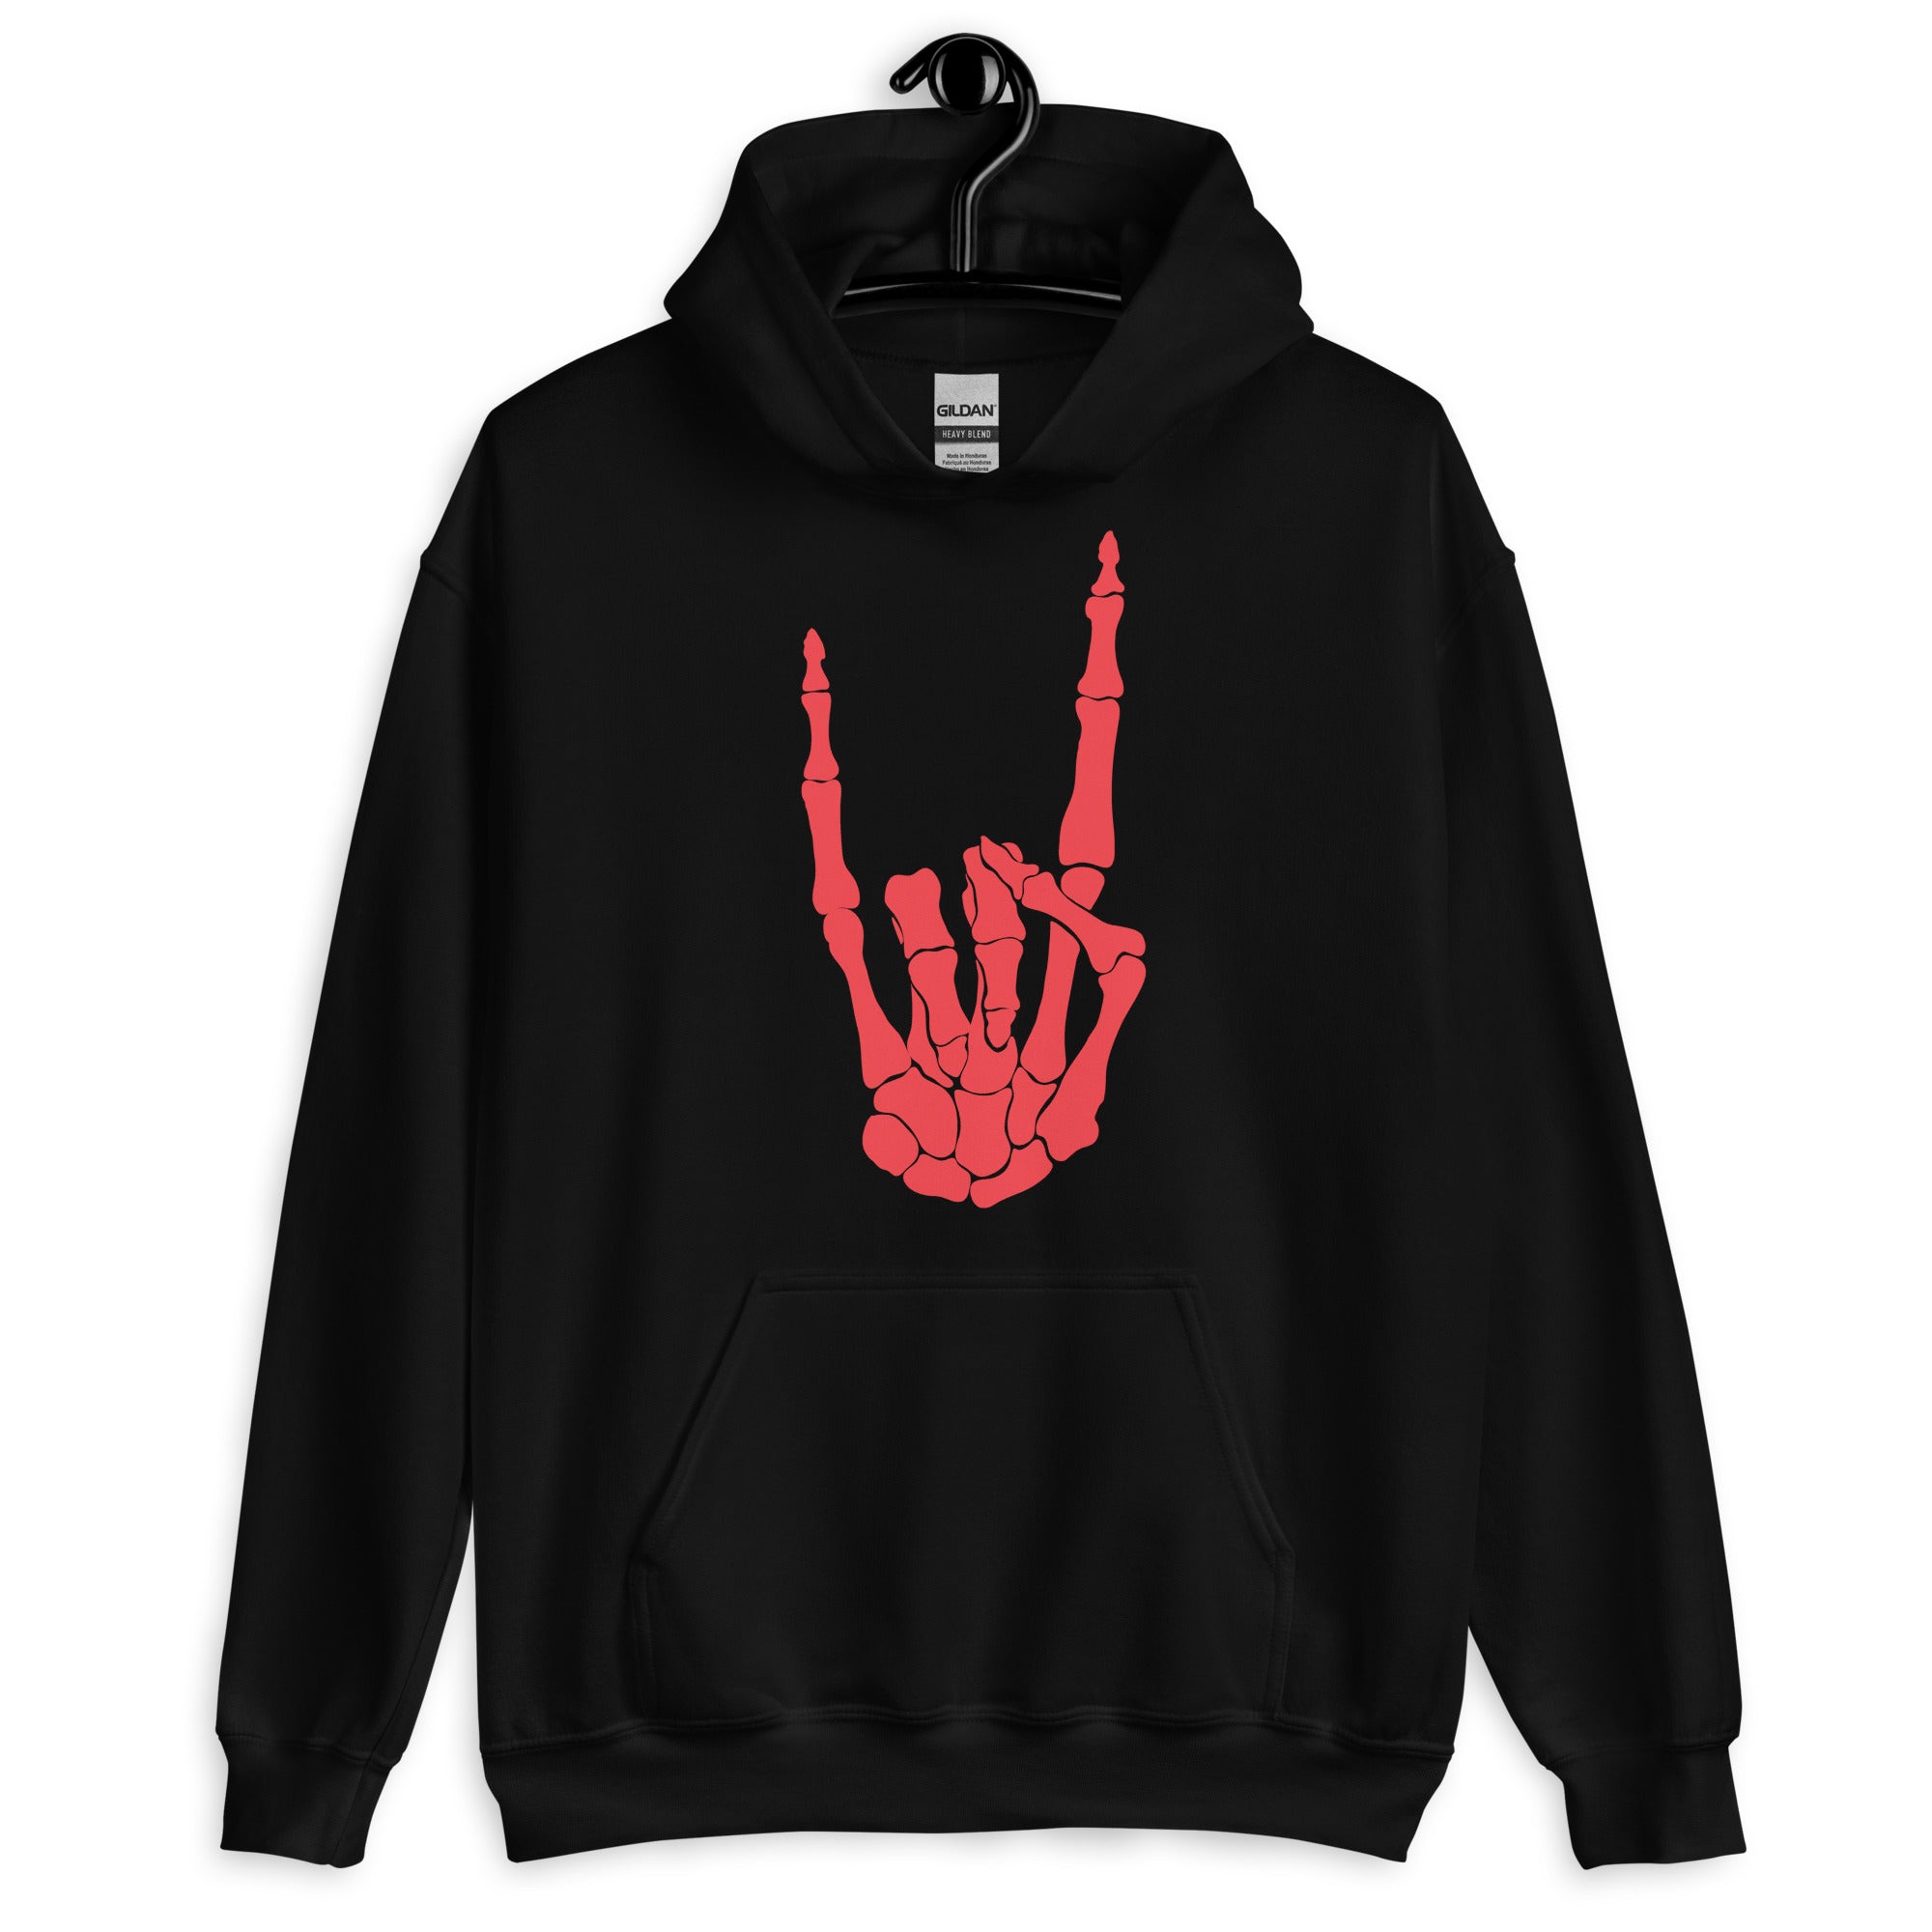 Devil Bone Hand Heavy Metal Horns Up Sign Unisex Hoodie Sweatshirt Red Print - Edge of Life Designs